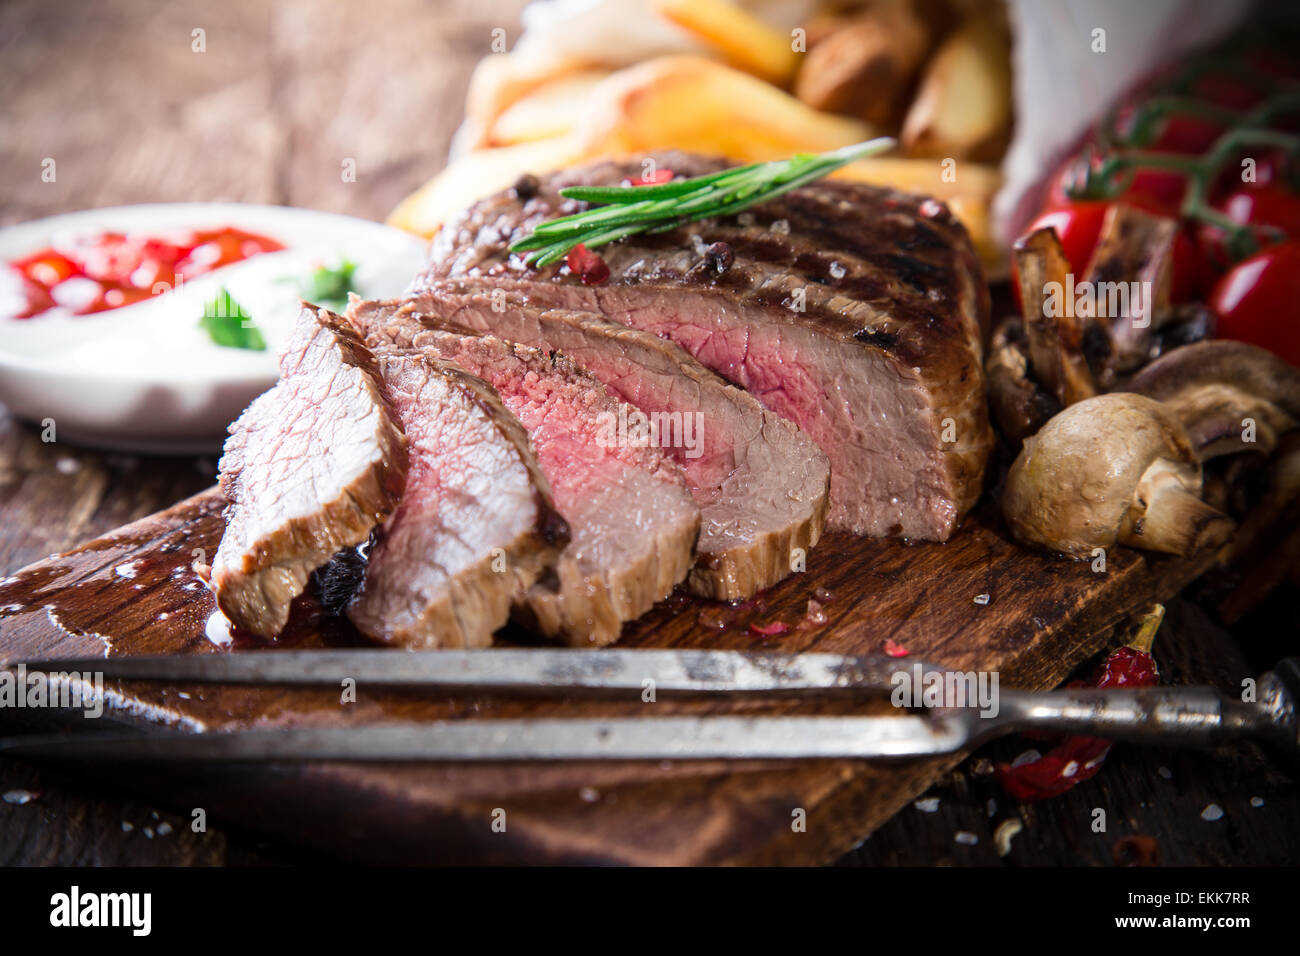 Délicieux steak de boeuf sur la table en bois, close-up Banque D'Images